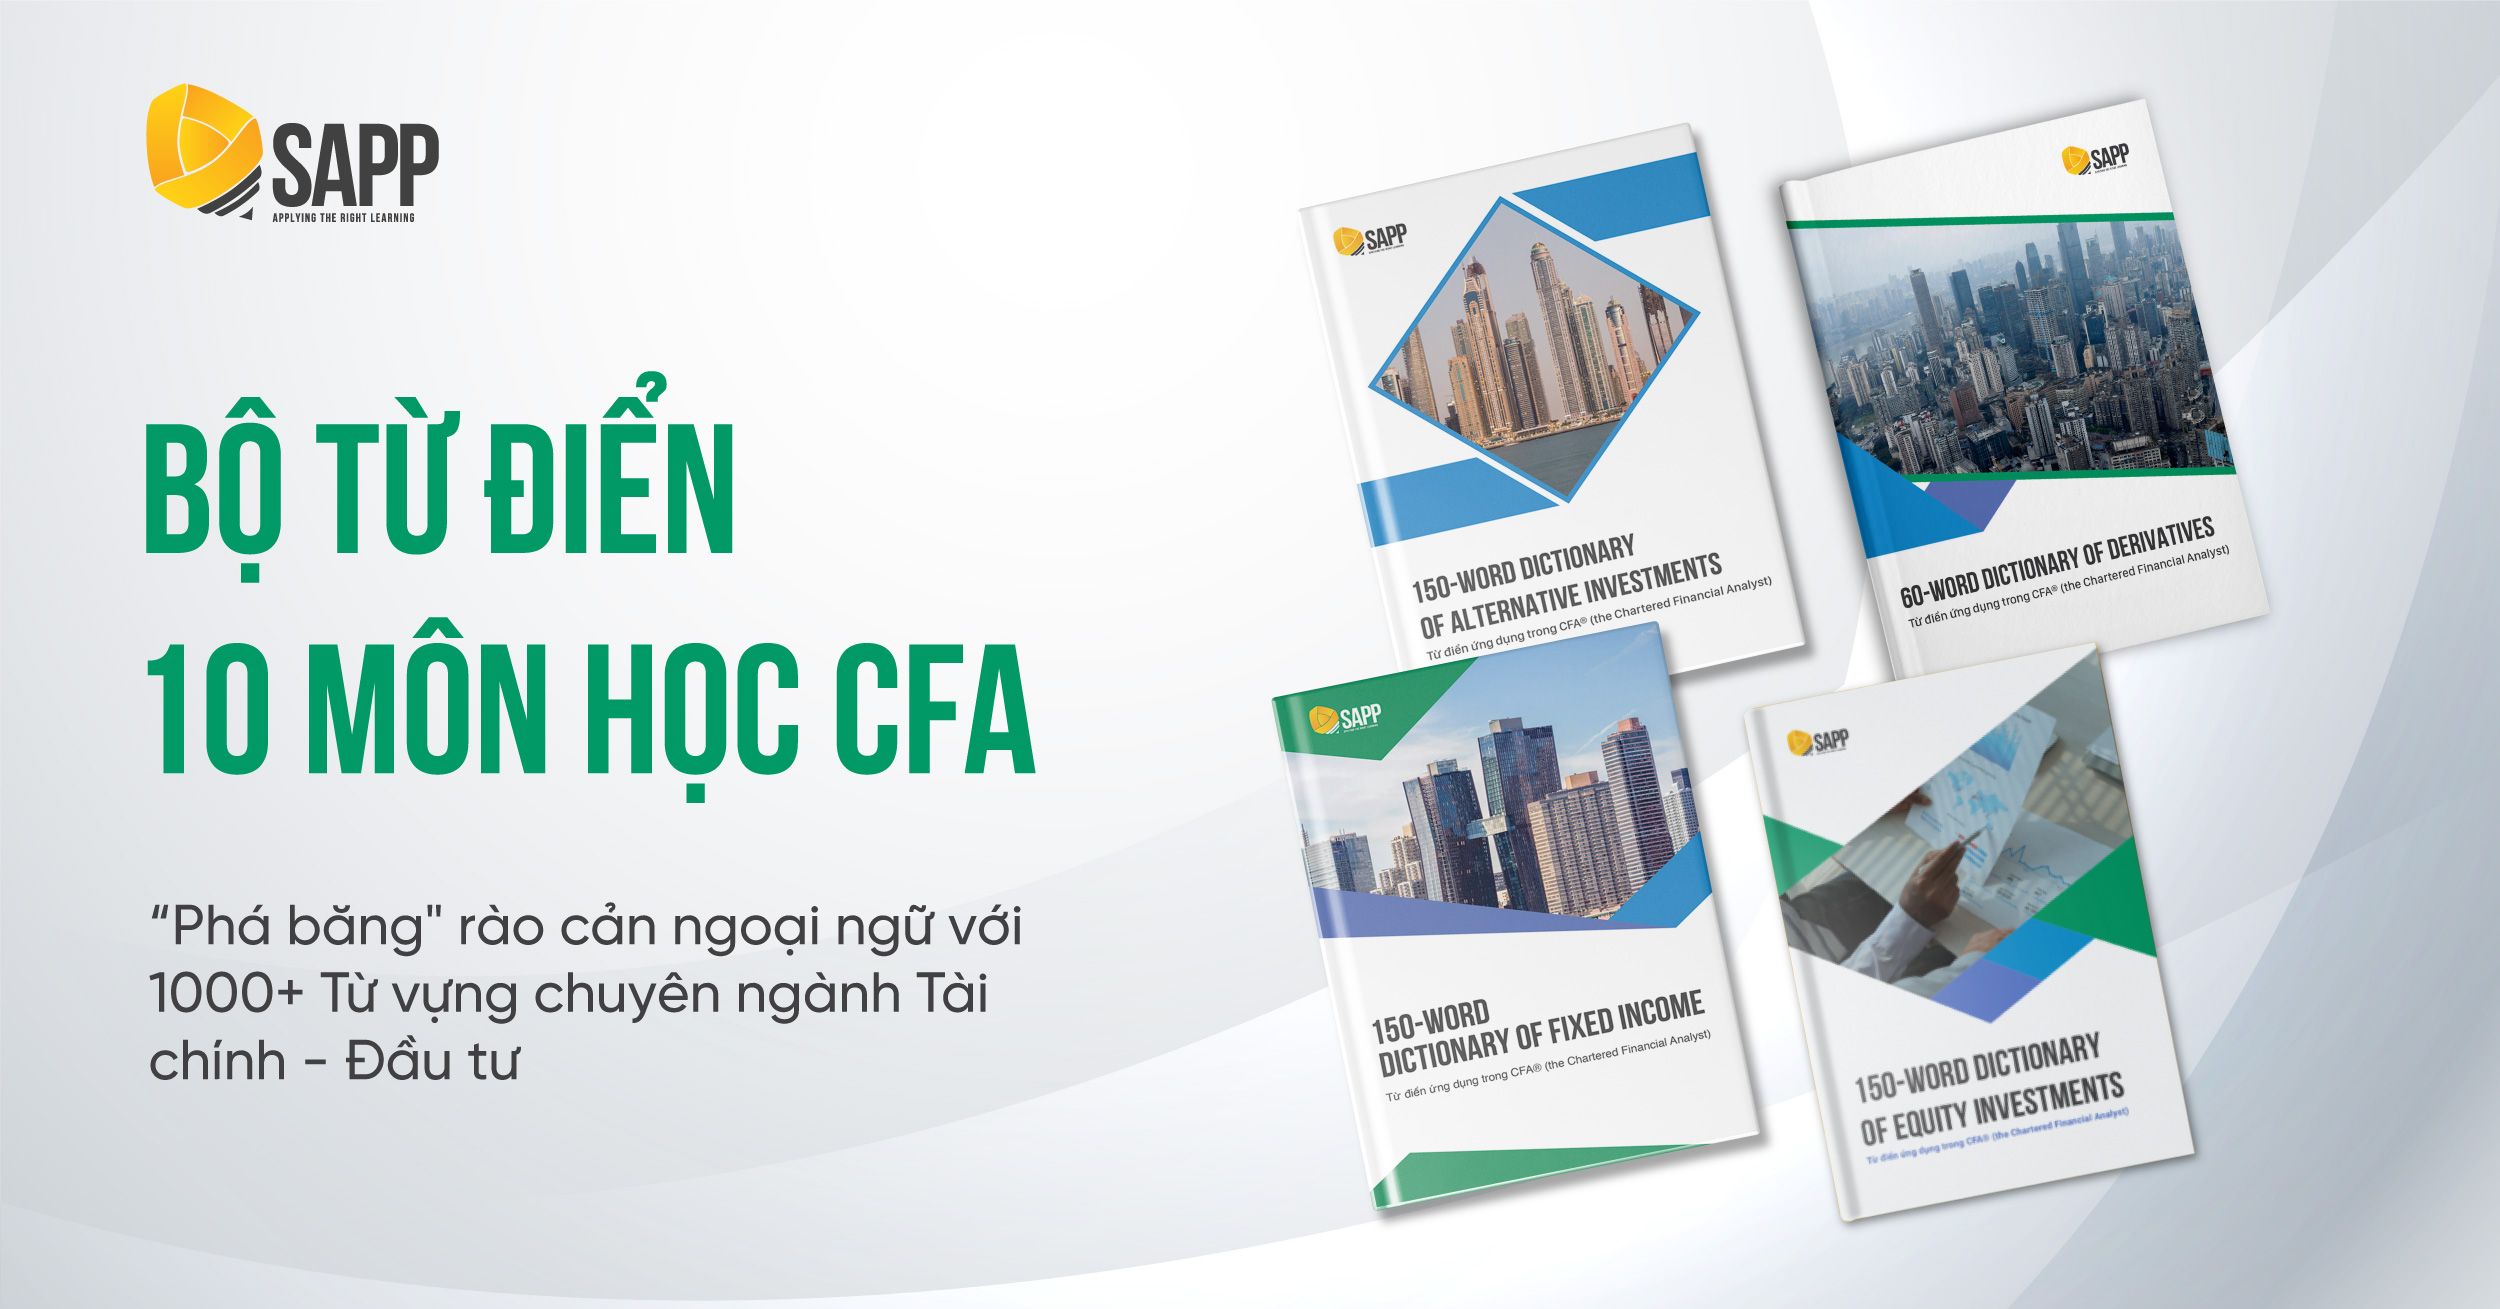 CFA Blog Tổng hợp tài liệu học CFA cho người mới bắt đầu_1200x628 copy